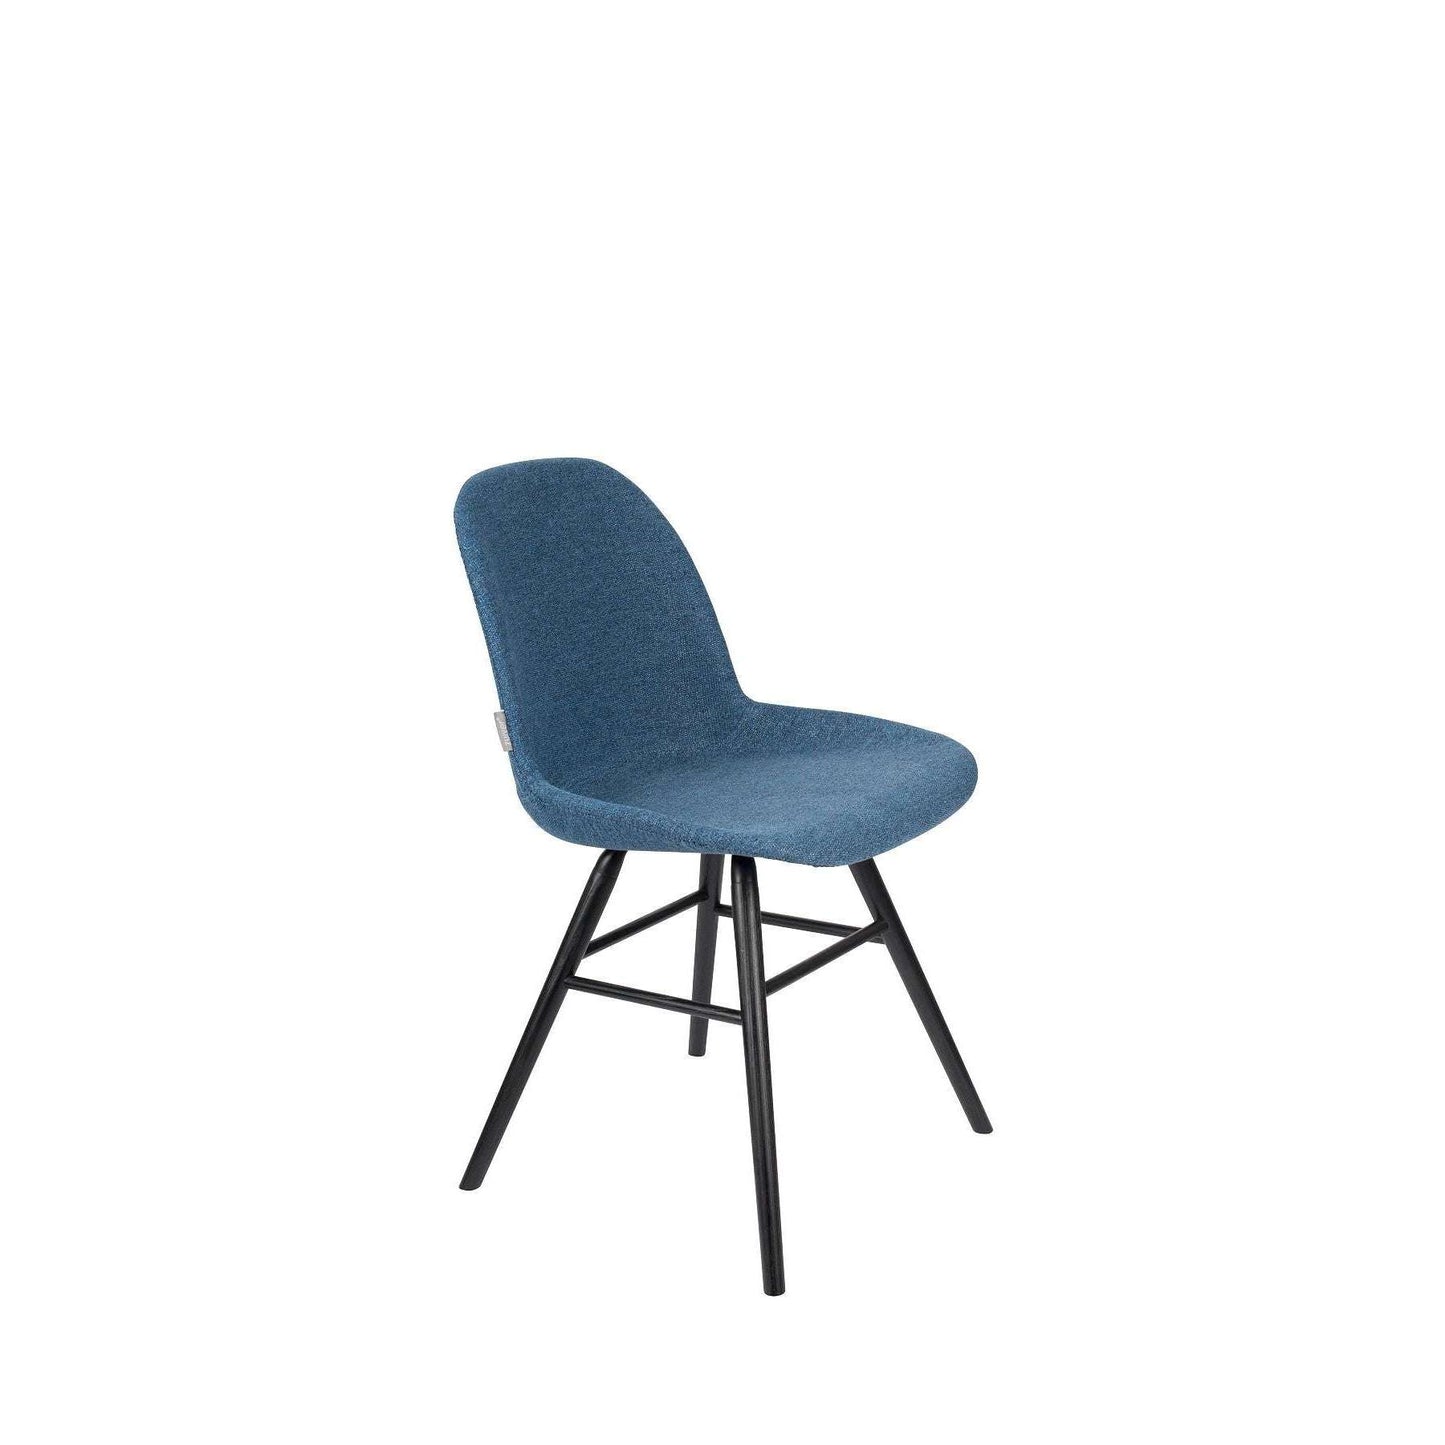 Zuiver stoel albert kuip soft blauw 55 x 49 x 81,5 cm